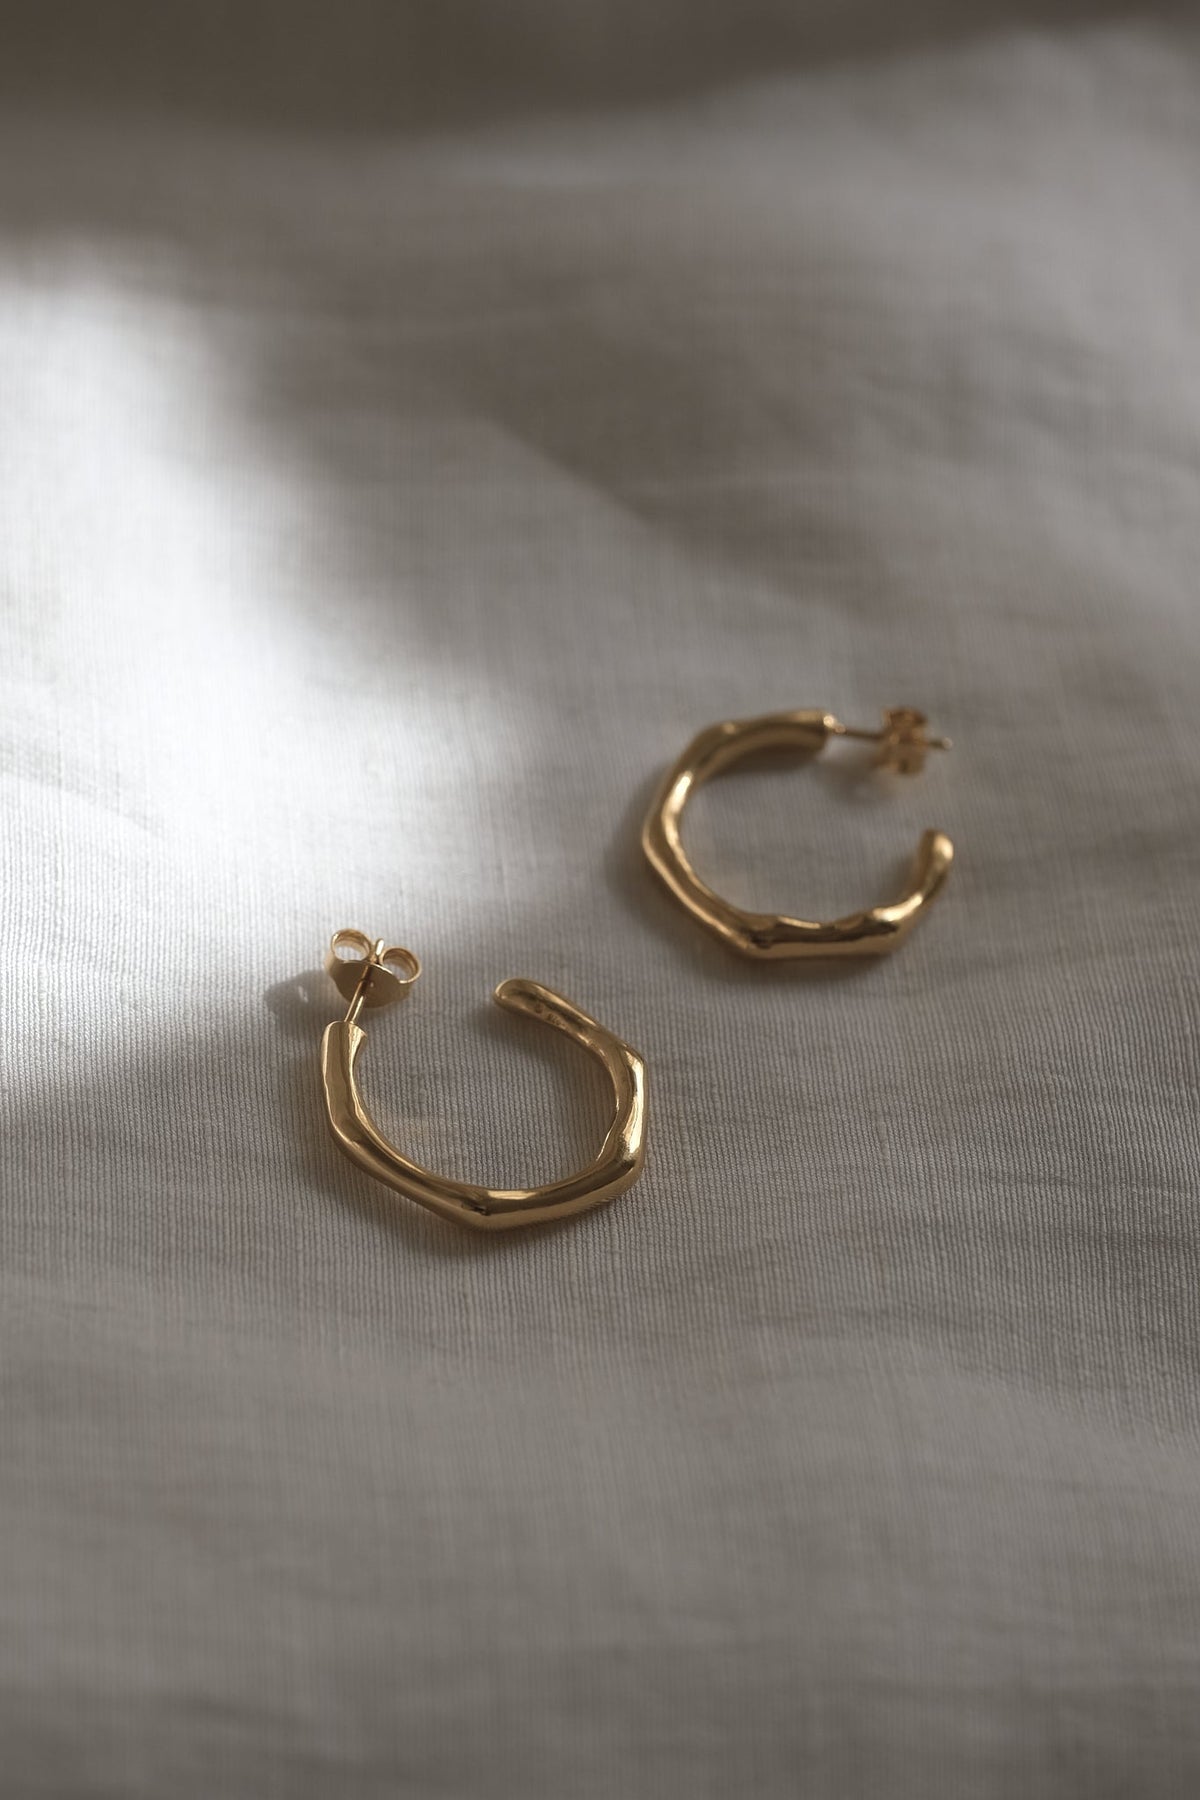 LUMI big earrings 18k gold